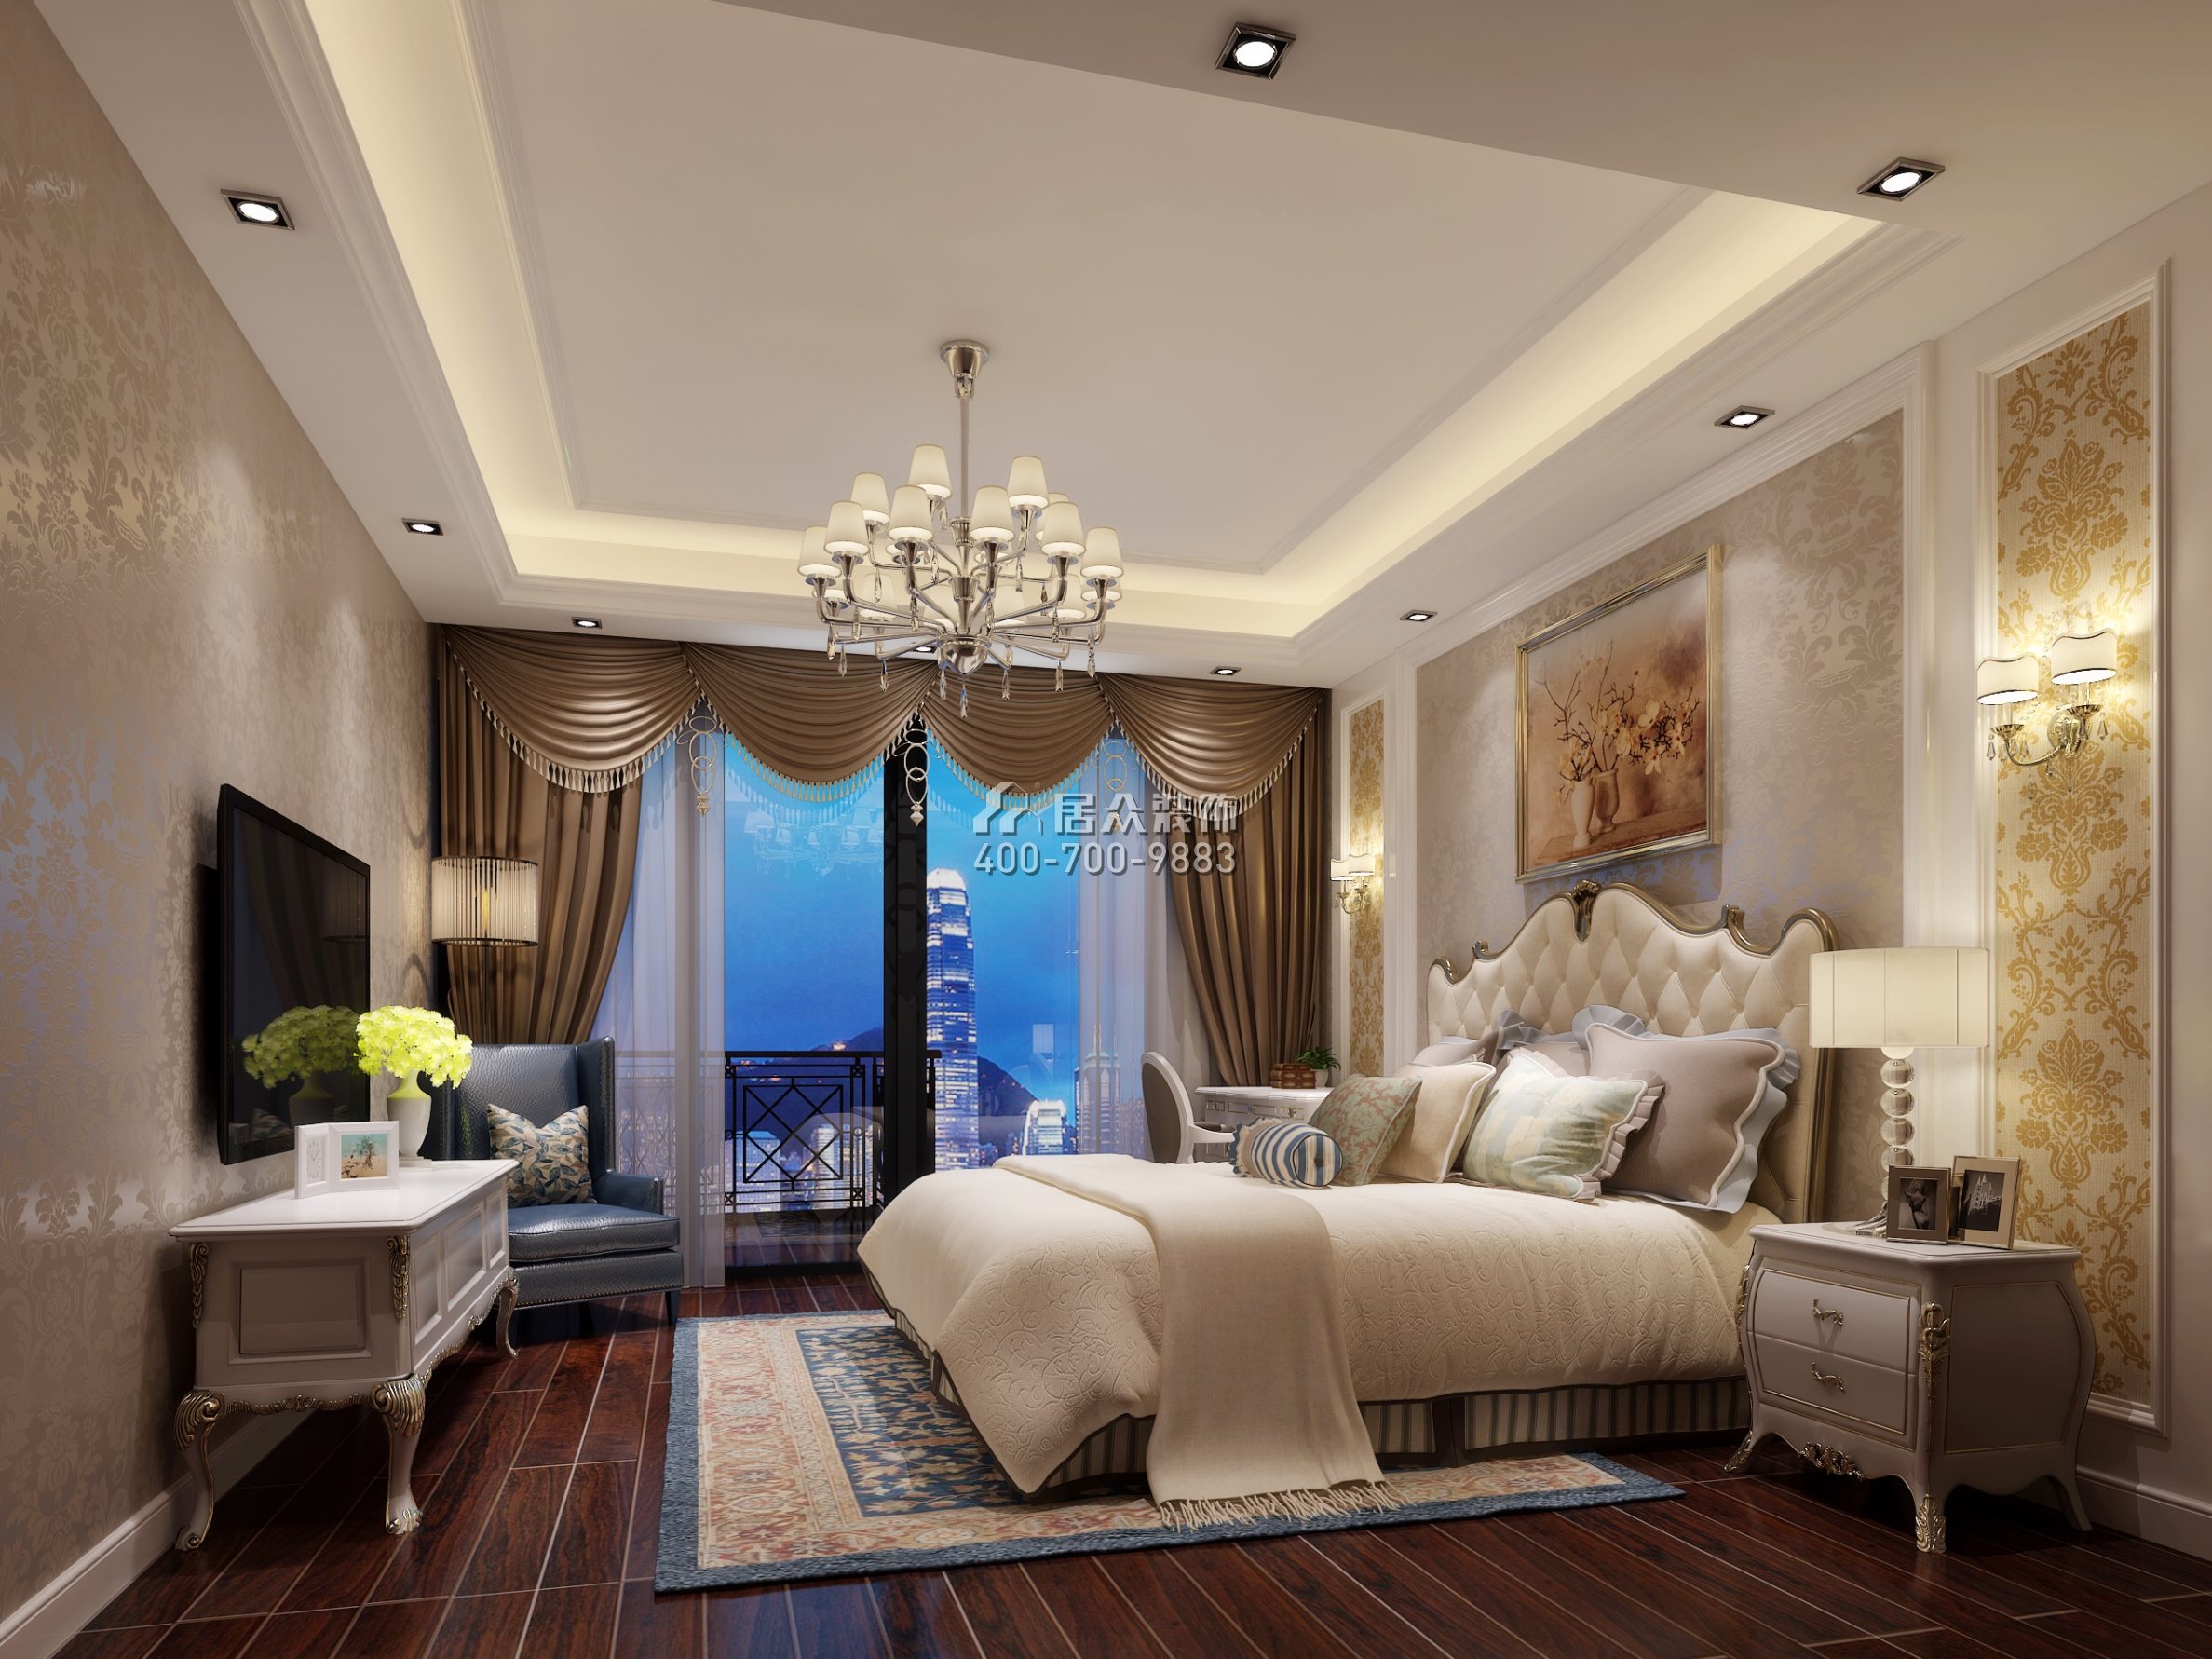 润恒尚园140平方米欧式风格平层户型卧室装修效果图